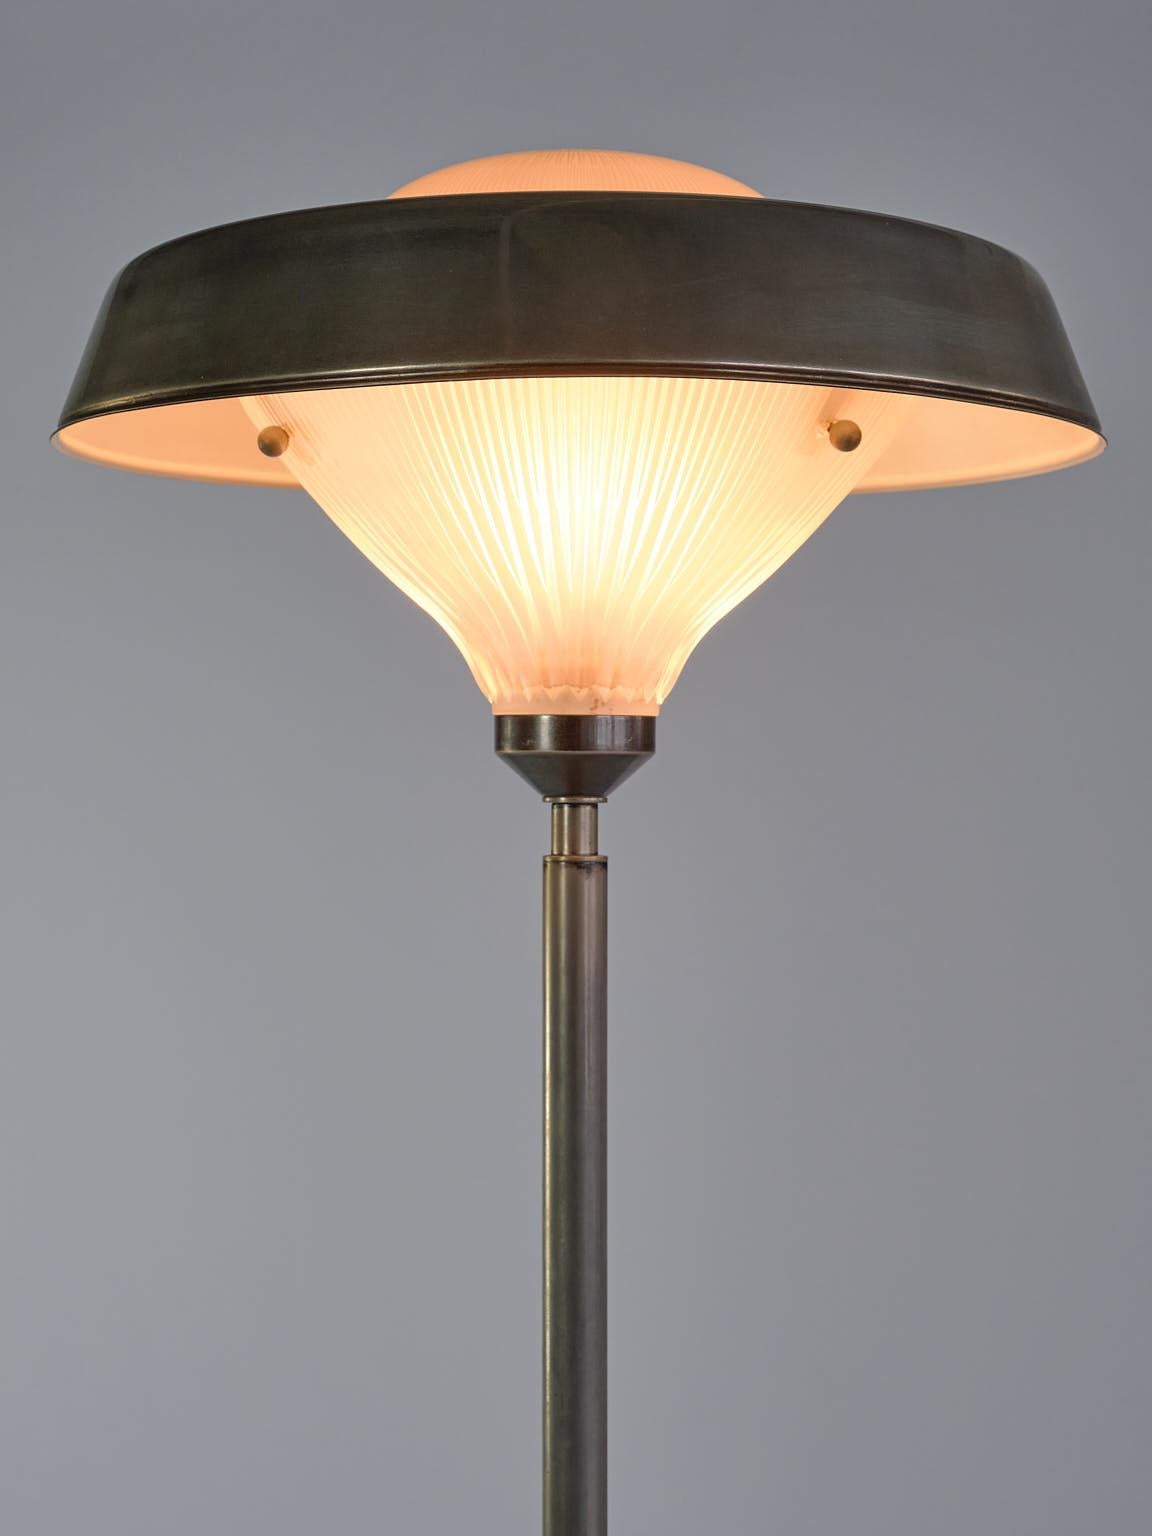 Studio BBPR 'Talia' Floor Lamp in Steel and Glass, Artemide, Italy, 1962 For Sale 2